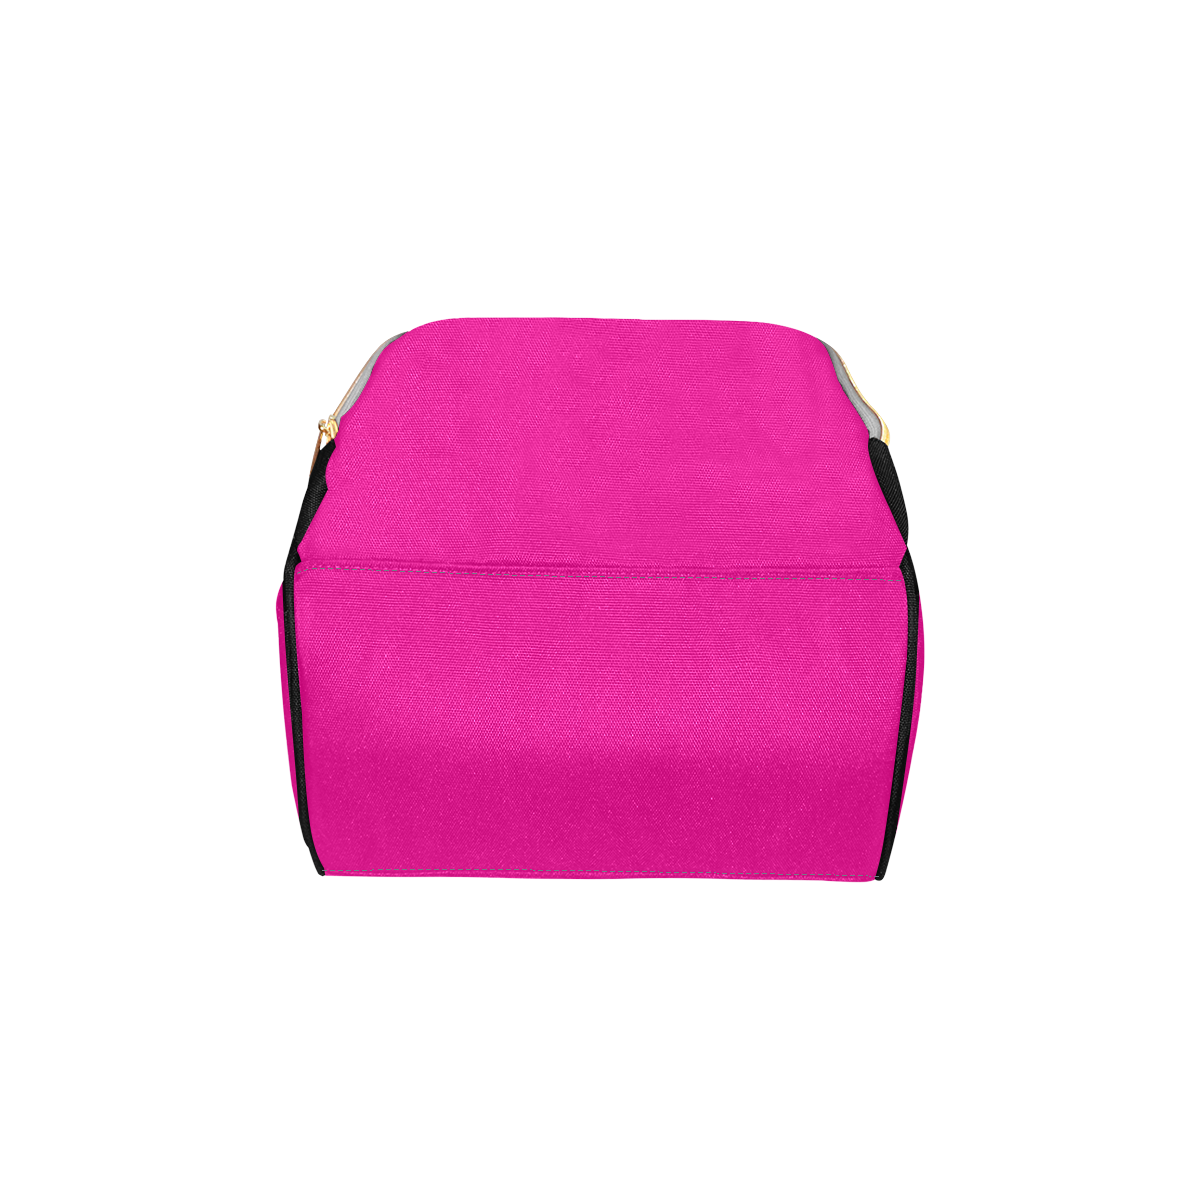 Boss Baby Pink Multi-Function Diaper Backpack/Diaper Bag (Model 1688)